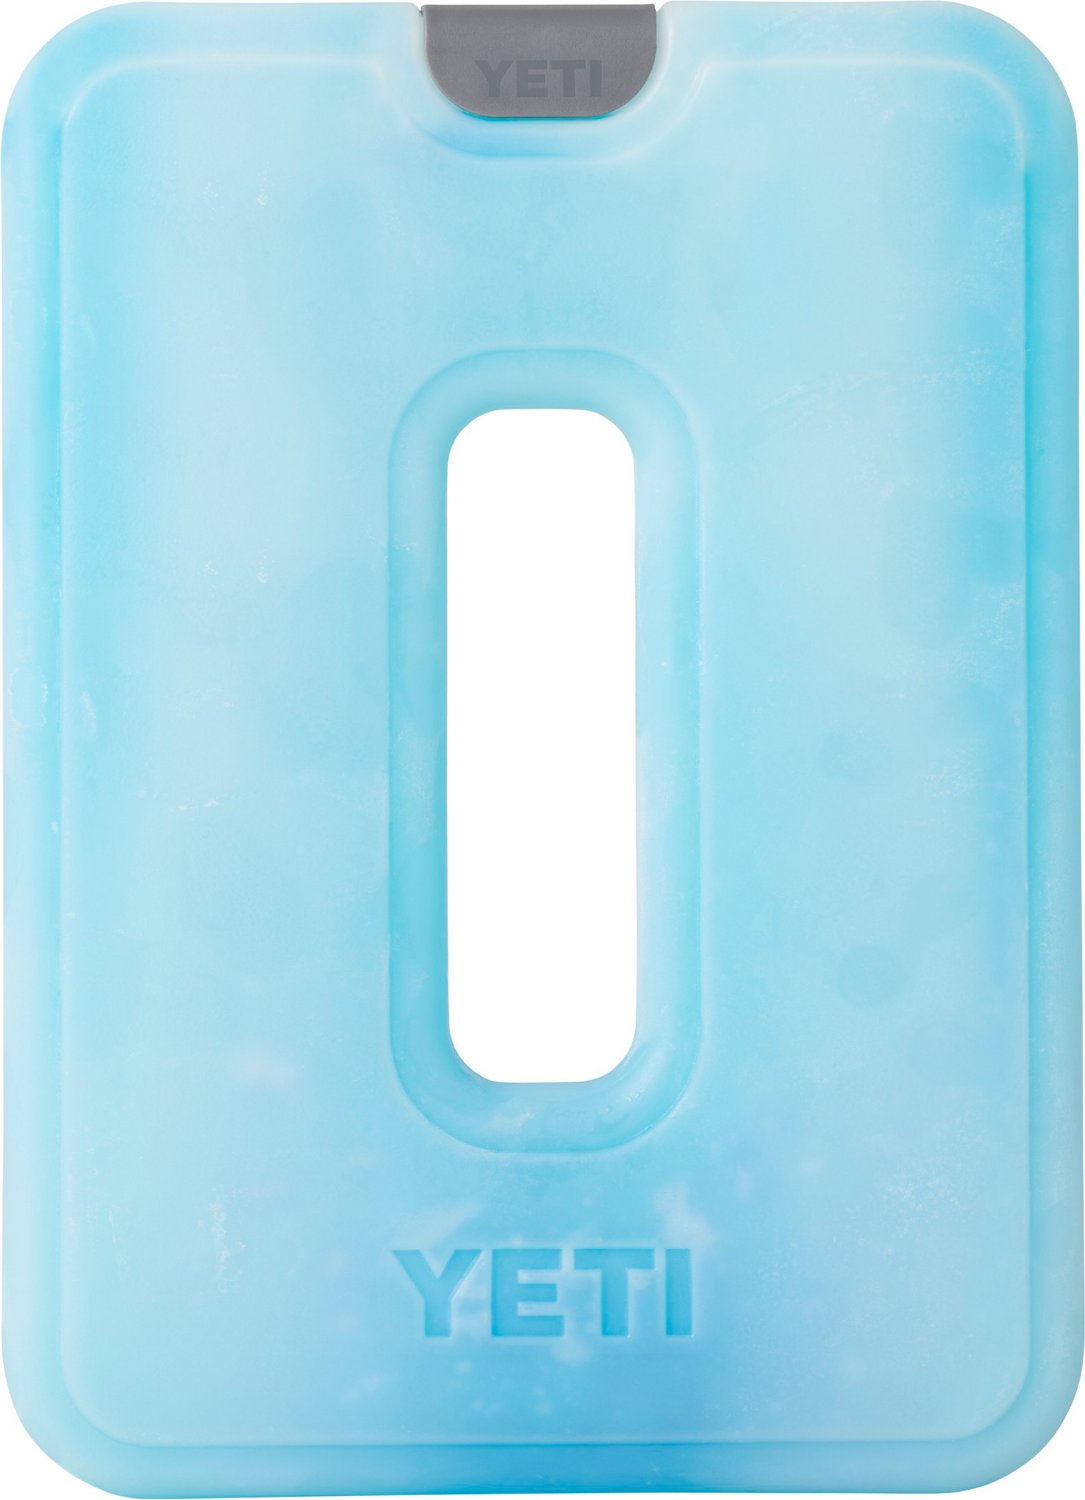 YETI Thin Ice - Large